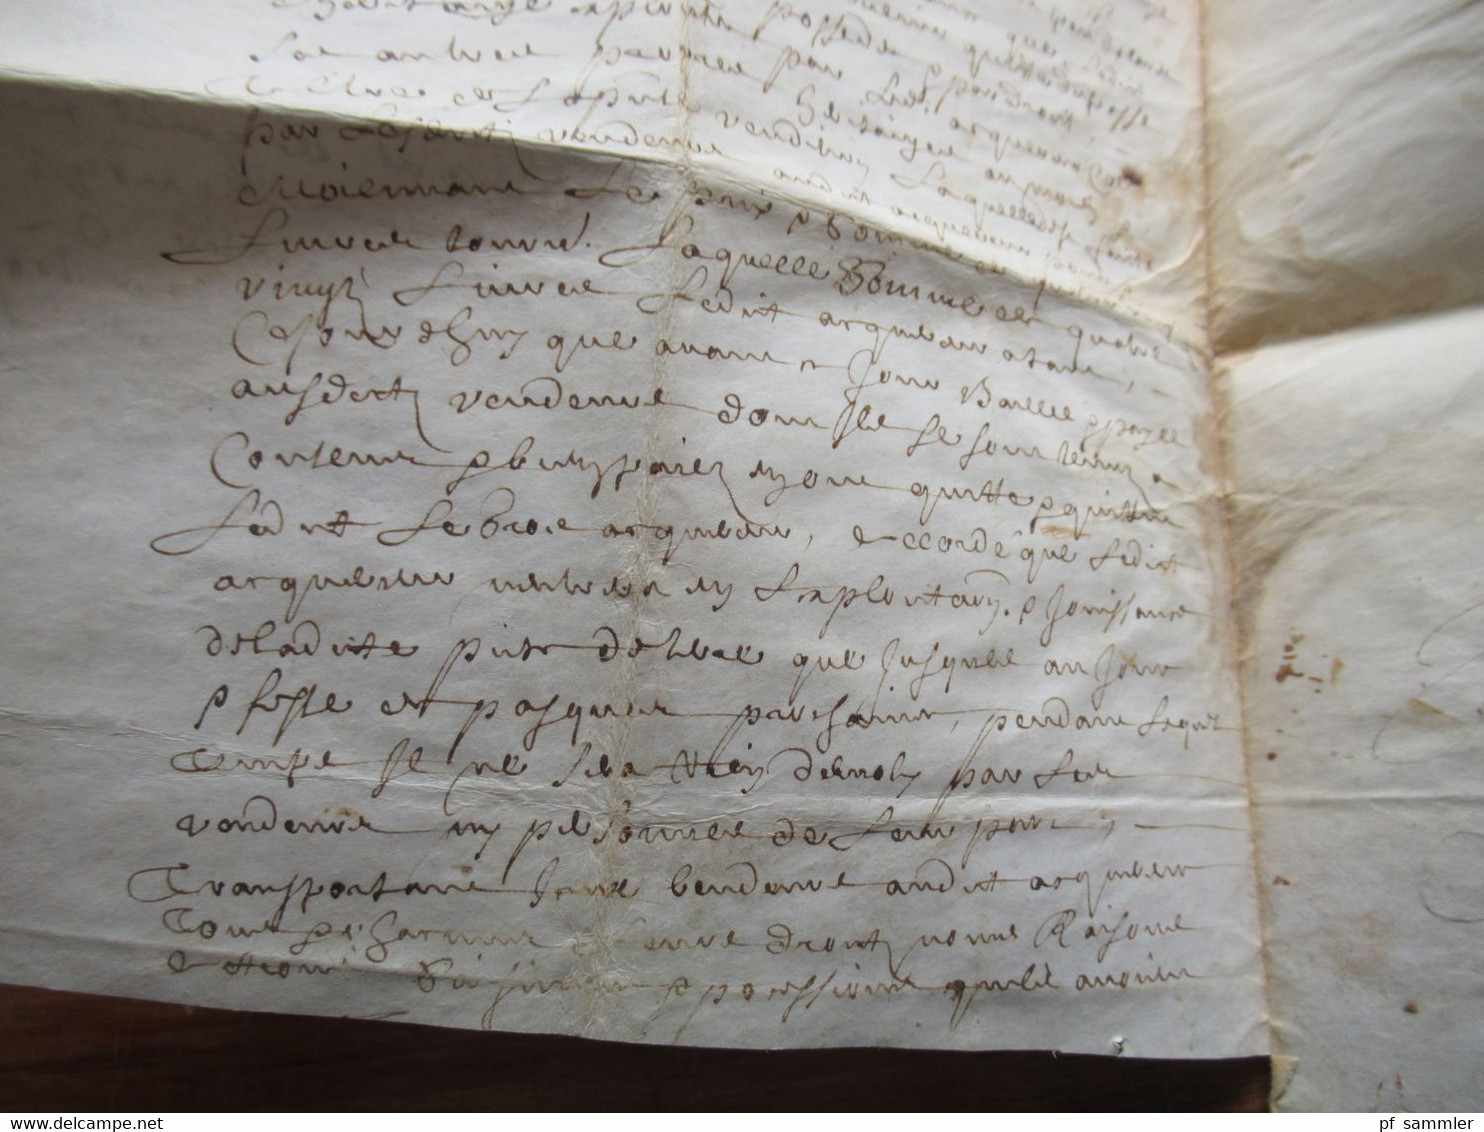 Frankreich Brief / Dokument vermutlich 17. Jahrhundert mit Autpgraphen / Schnörkelunterschriften!